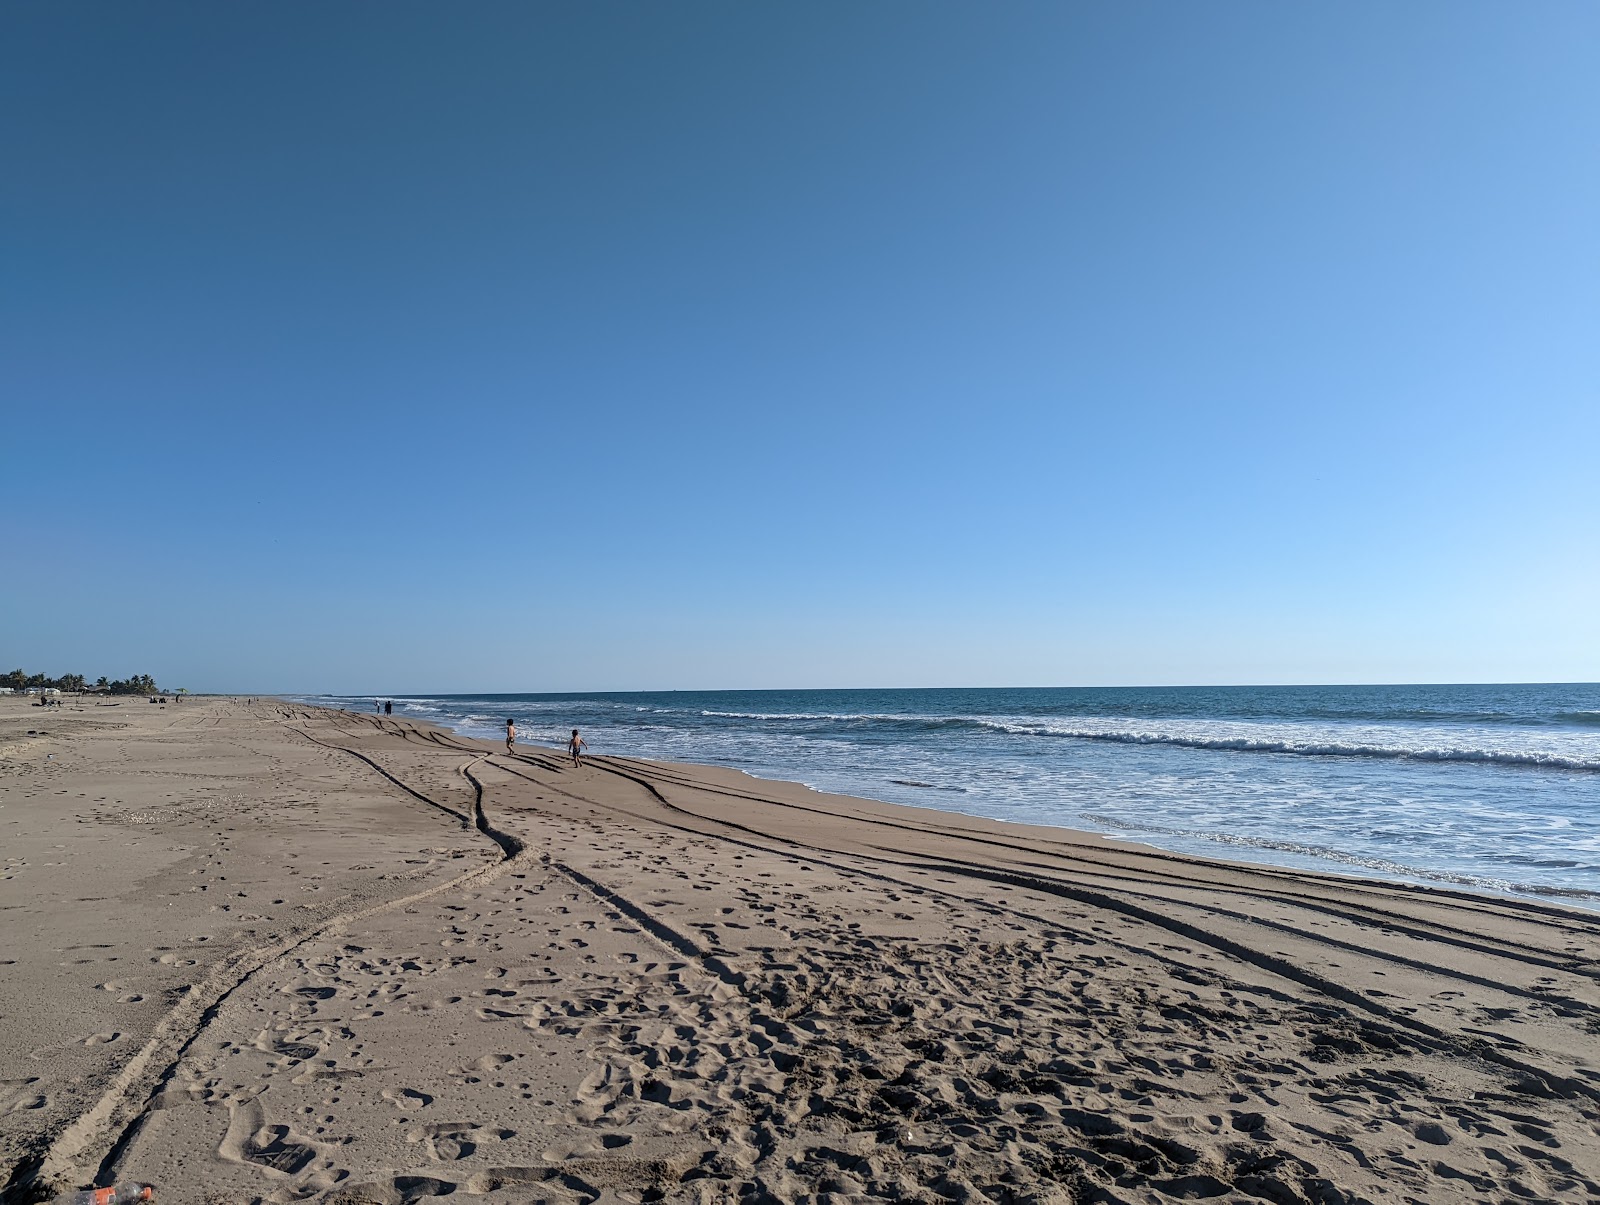 Fotografie cu El Caimanero beach cu o suprafață de nisip strălucitor